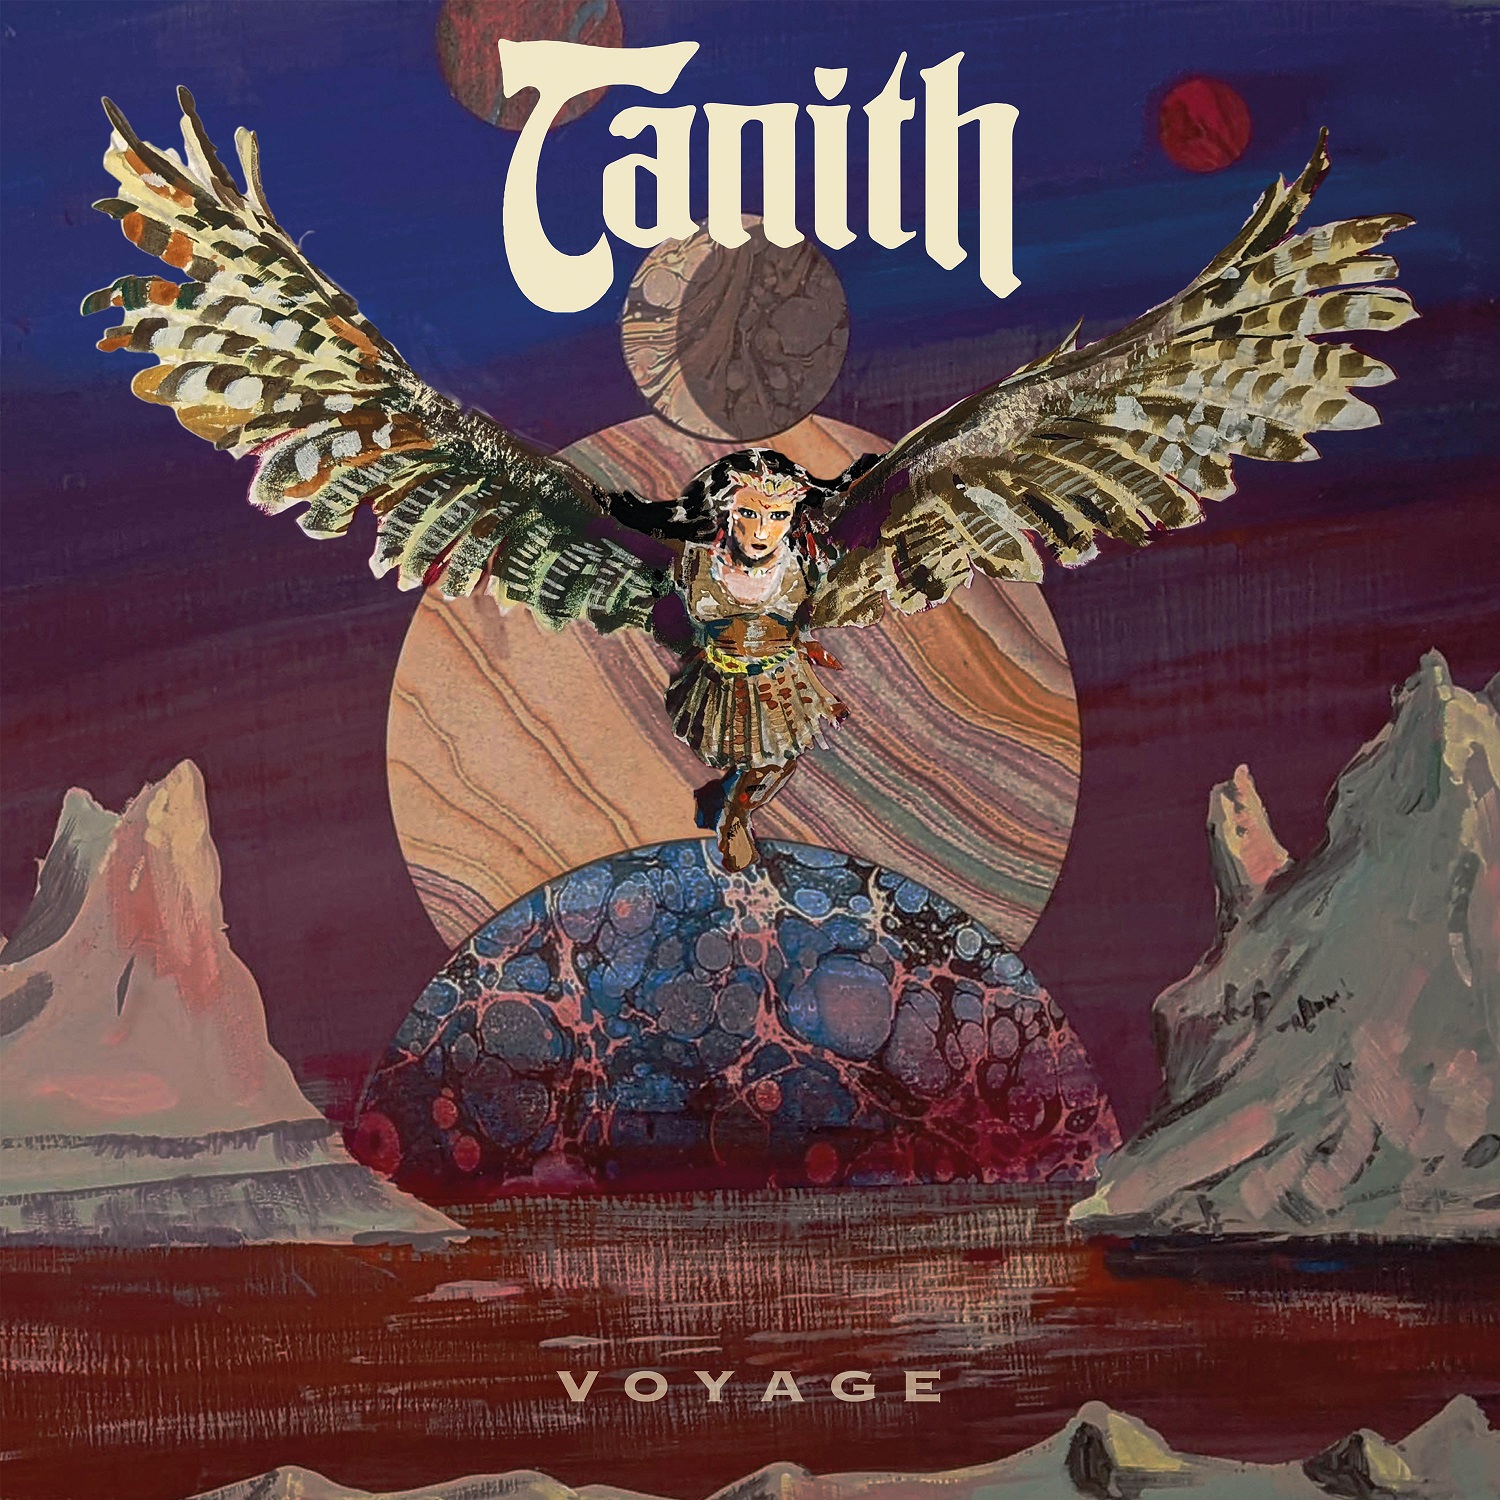 tanith_voyage-01.jpg